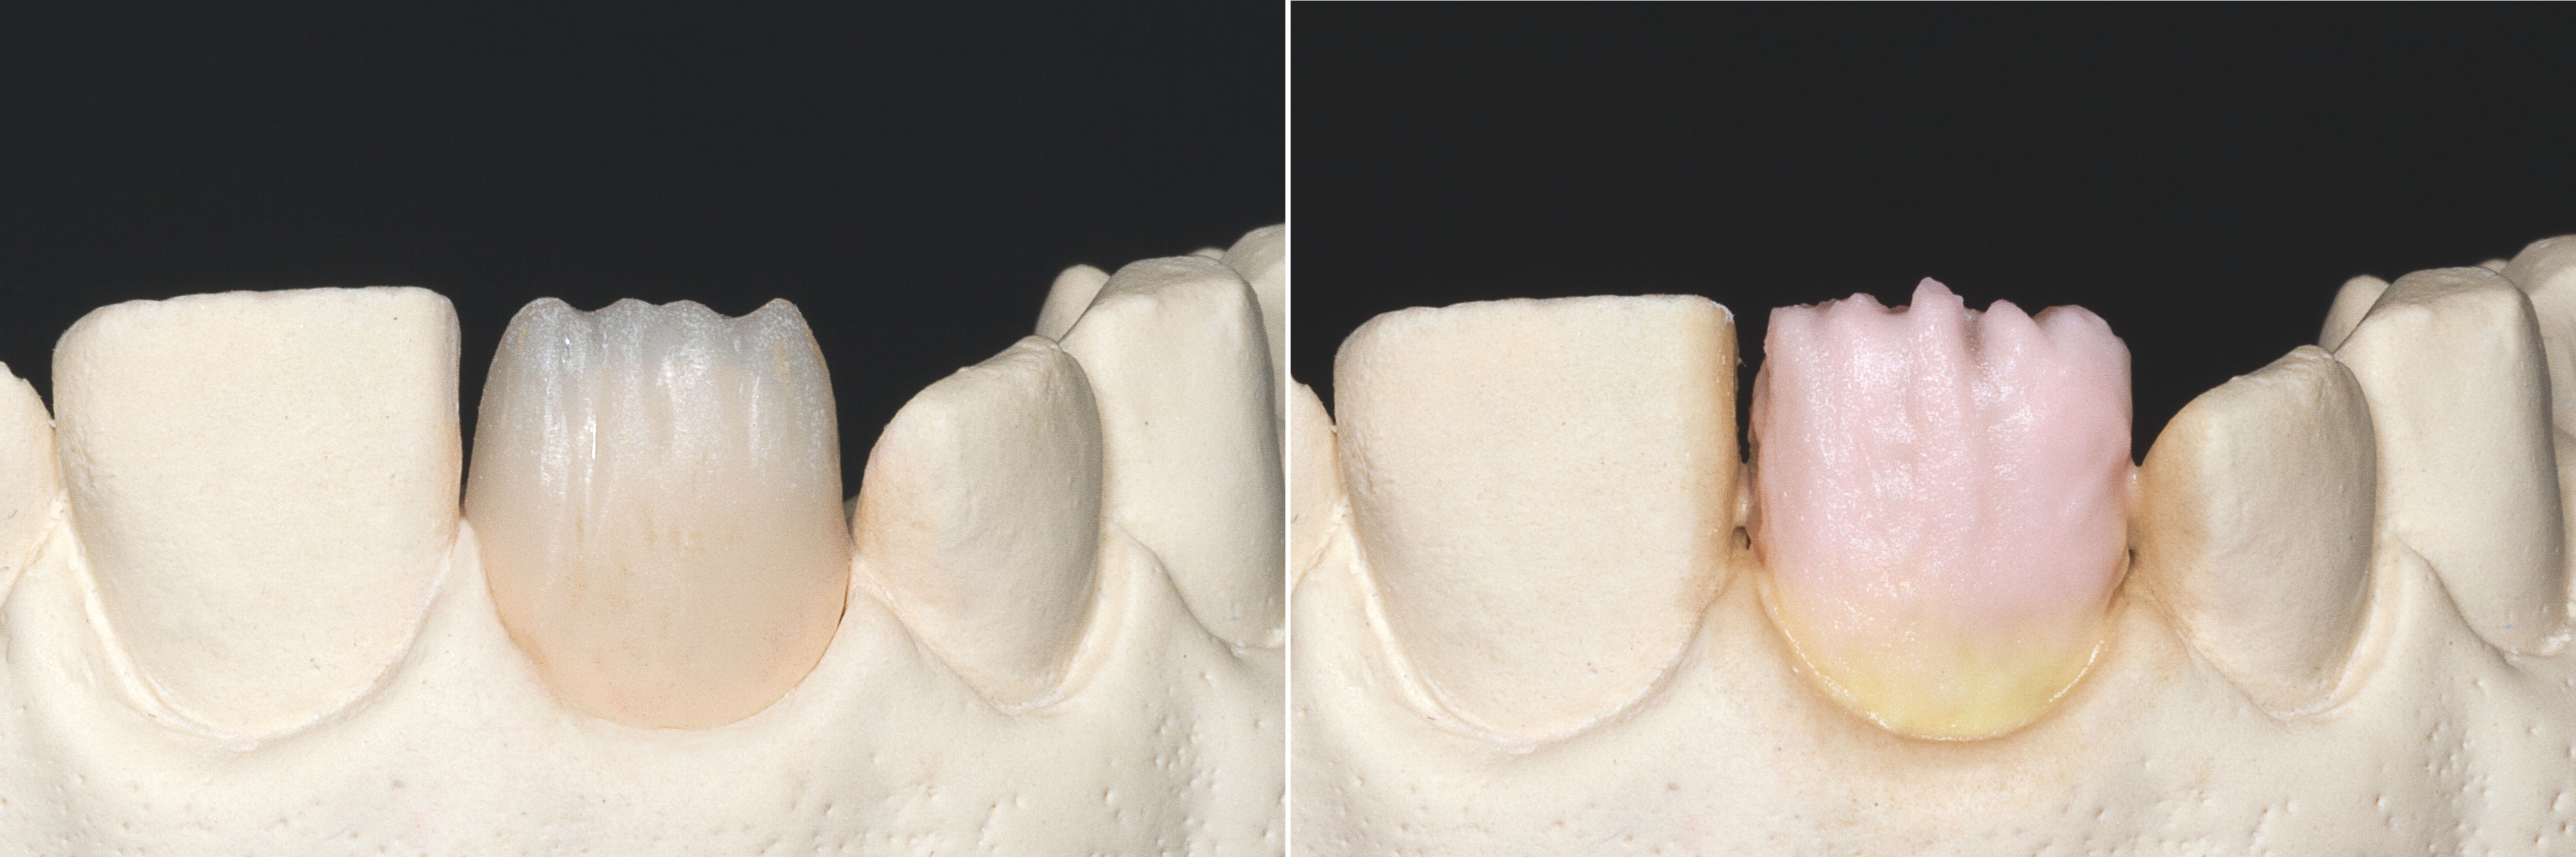 Ill. 1 : Couronne réduite du côté incisal.
Ill. 2 : Forme de la dent complétée : dans la zone cervicale par VITA VM 11 SUN DENTINE et dans le corps de la dent par VITA VM 11 TRANSPA DENTINE dans la couleur adéquate.